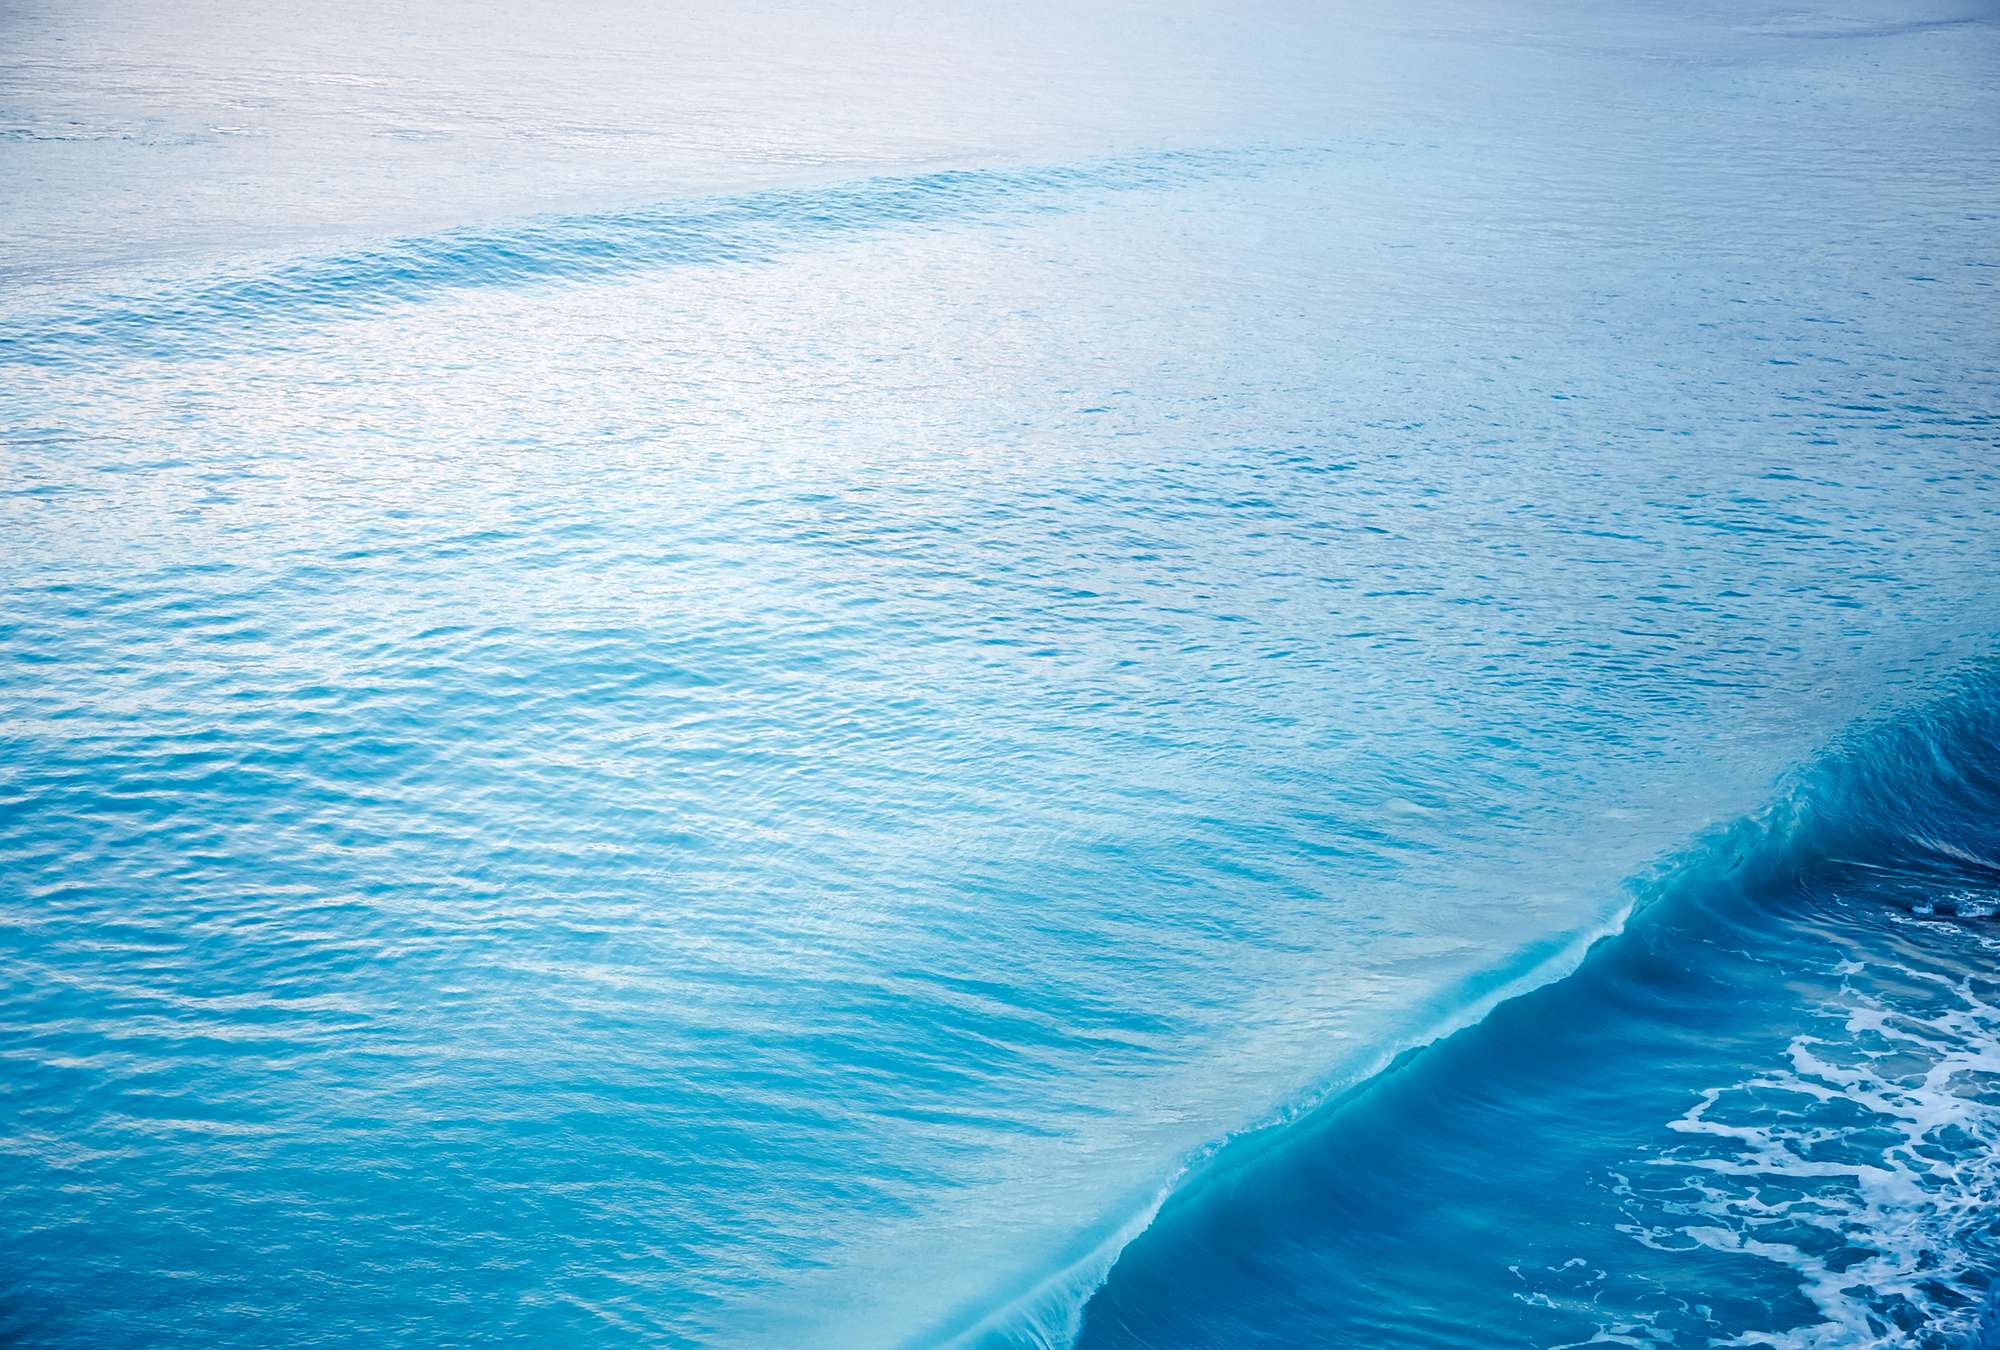             Muurschildering van een brekende golf in zee
        